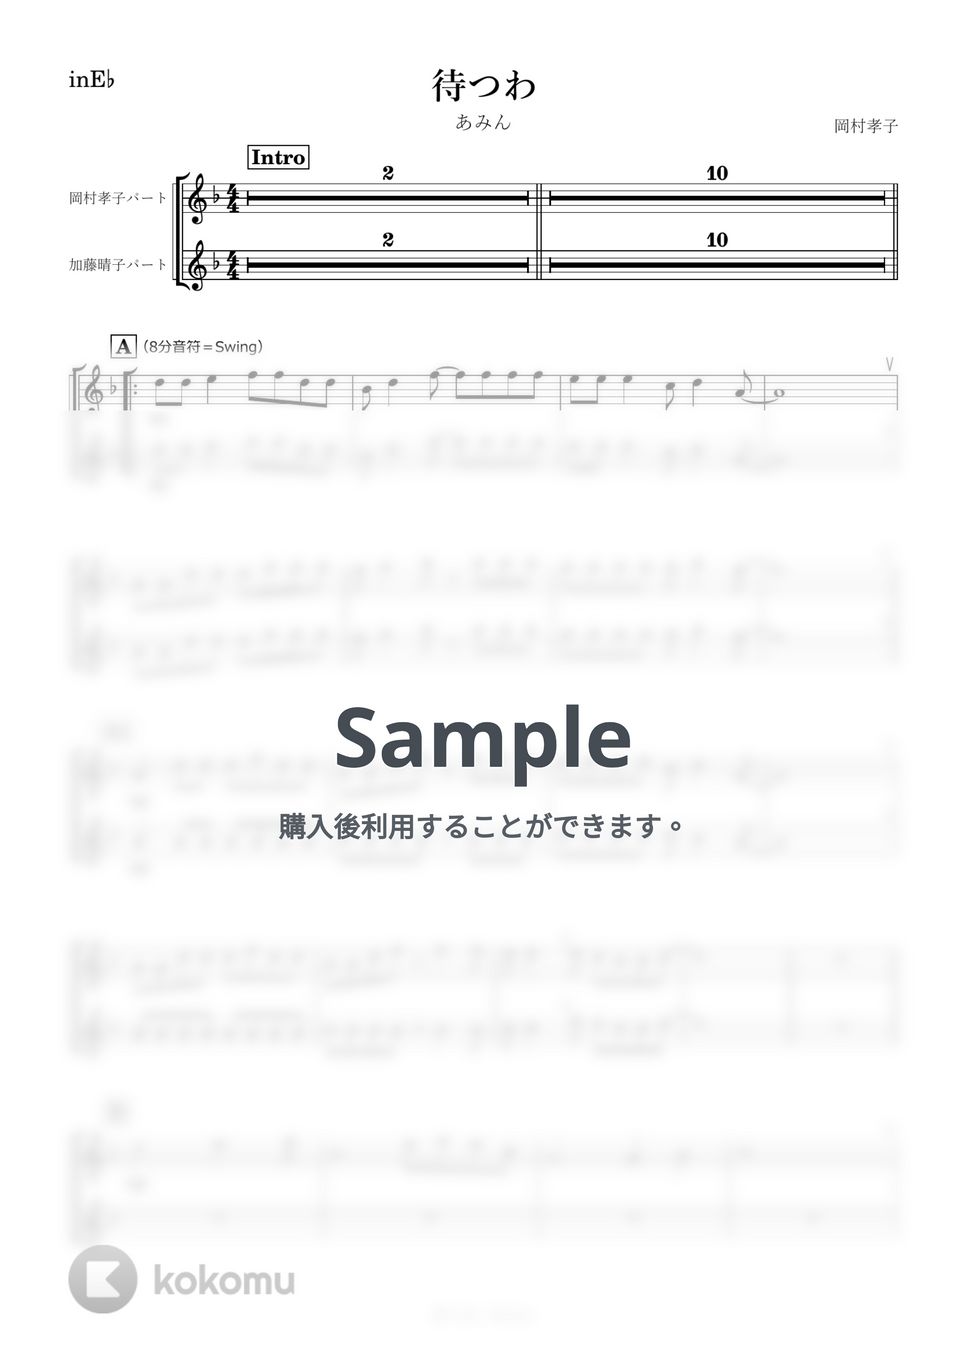 あみん - 待つわ (E♭) by kanamusic